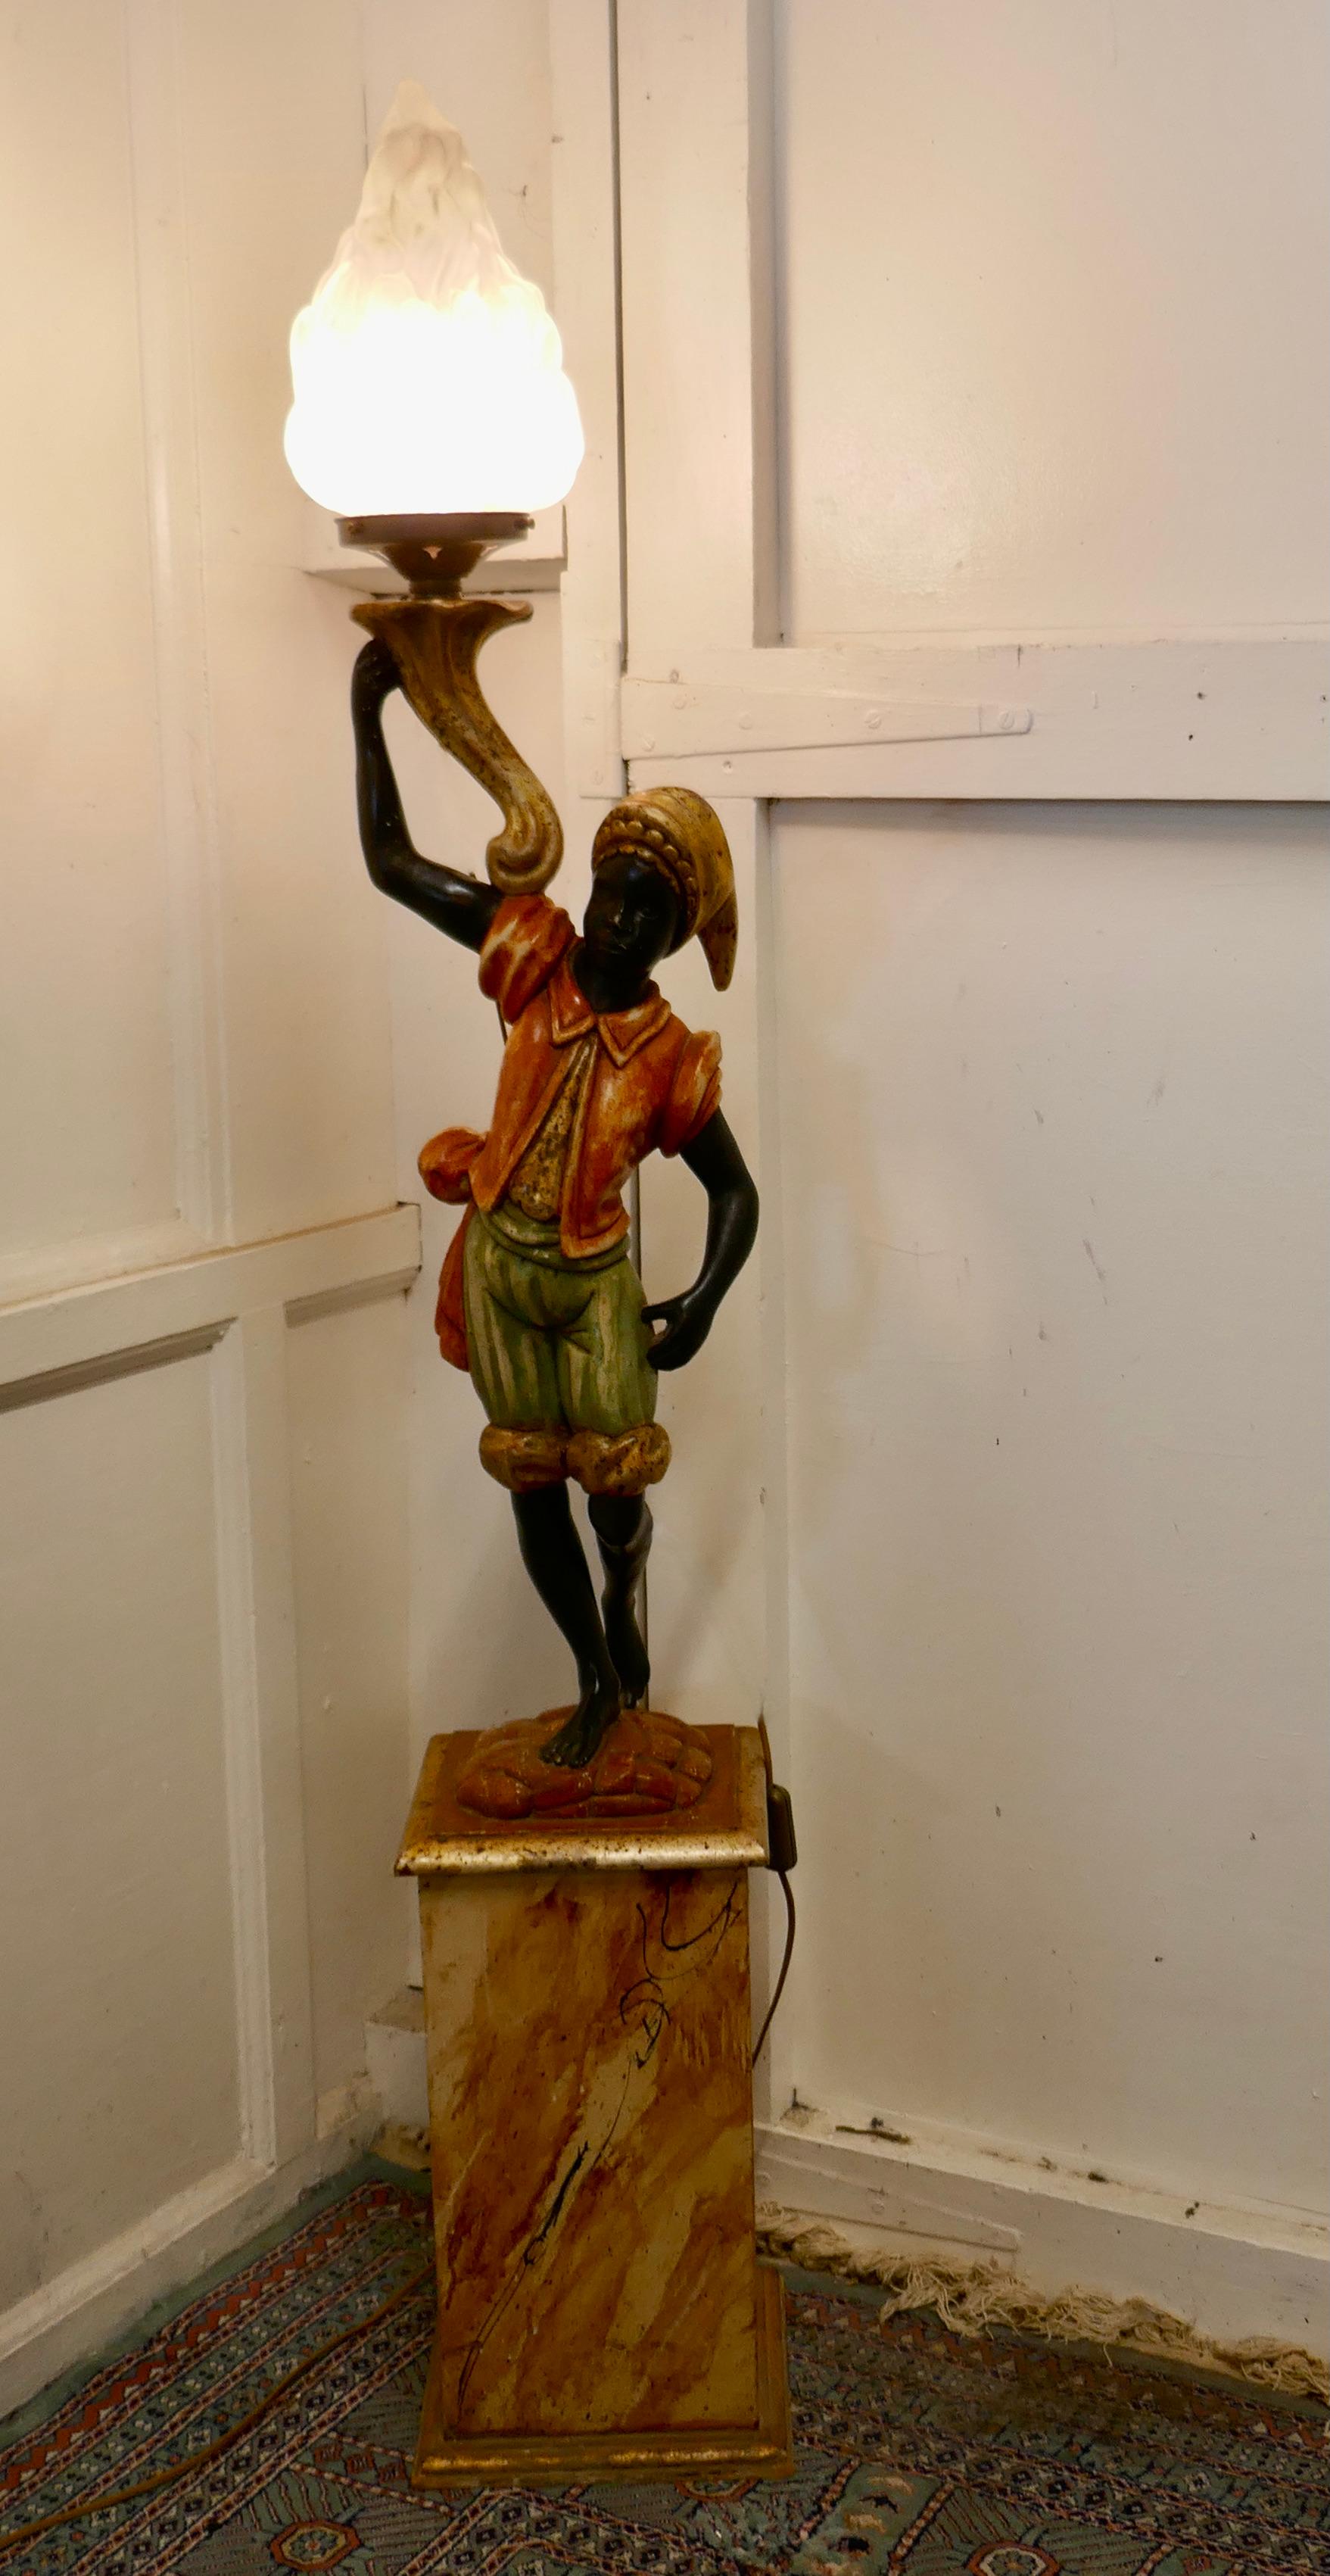 Magnifique lampadaire figural vénitien

Charmant lampadaire italien en bois sculpté.
La figure est sculptée dans du bois tendre qui a été préparé avec du gesso avant d'être peint, les couleurs sont bonnes bien qu'un peu usées par les années, il